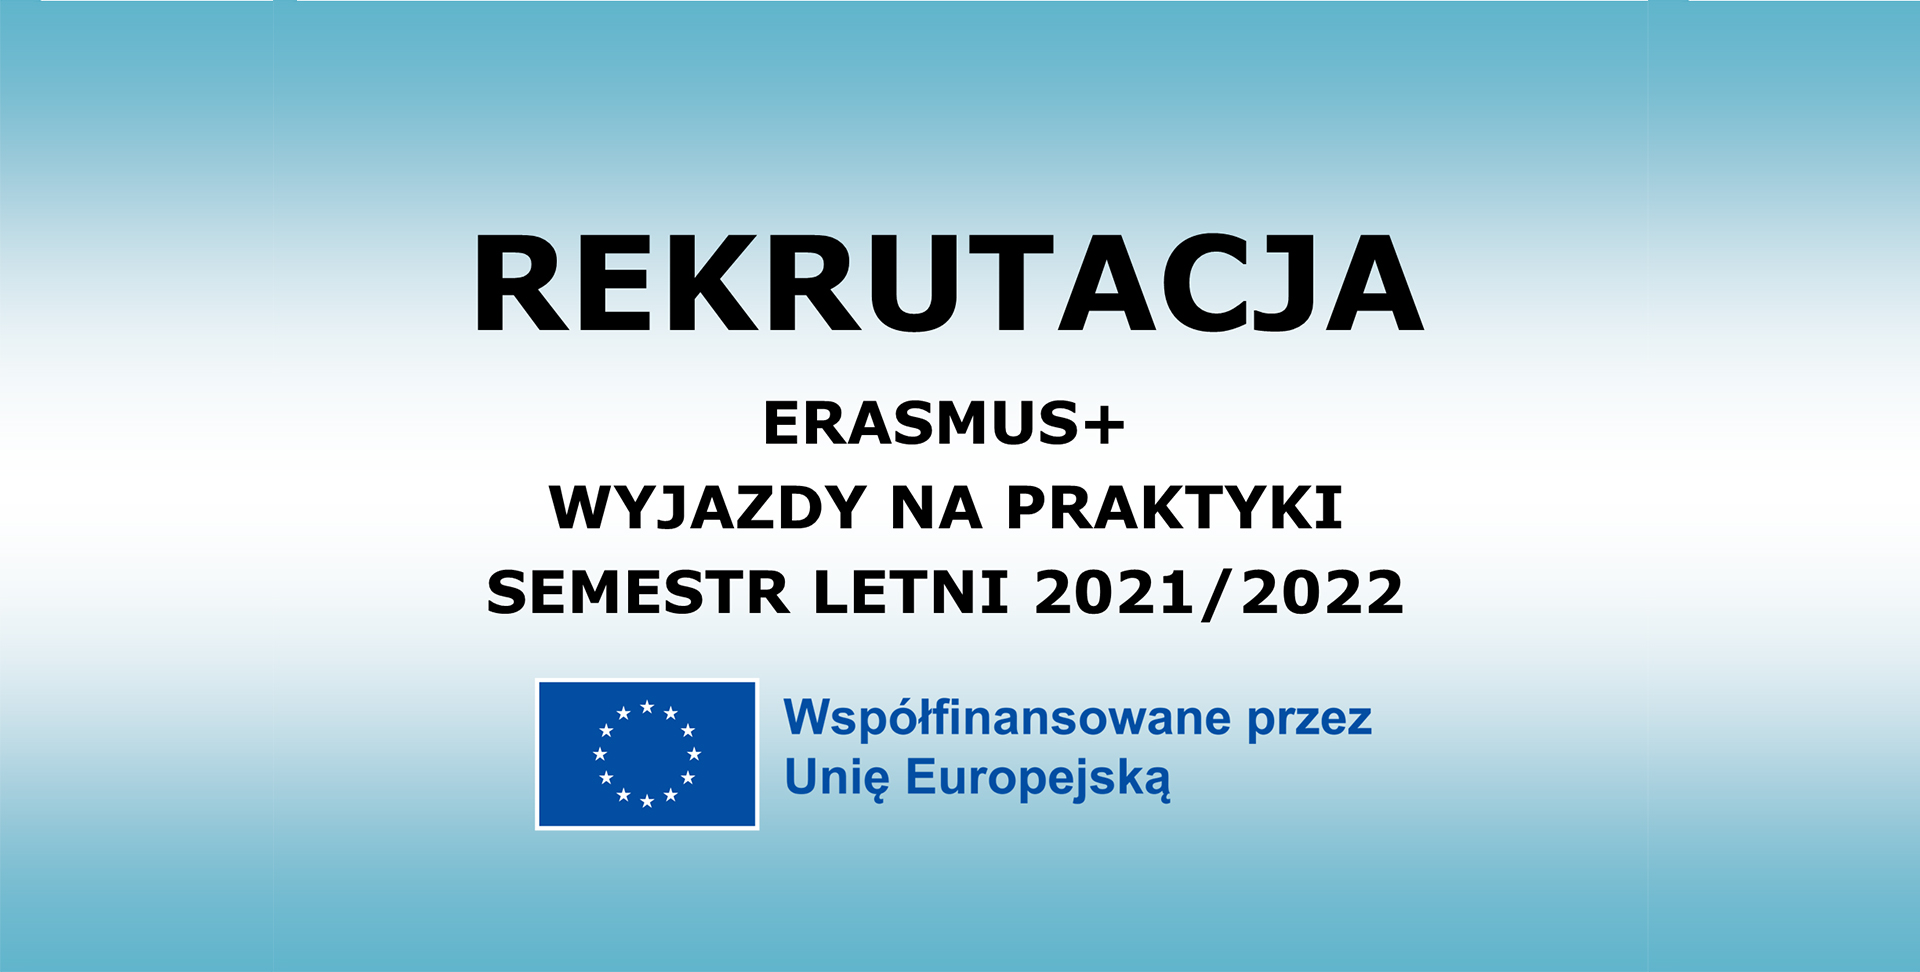 REKRUTACJA dla studentów na praktyki w ramach programu Erasmus+ semestr letni 2021/2022